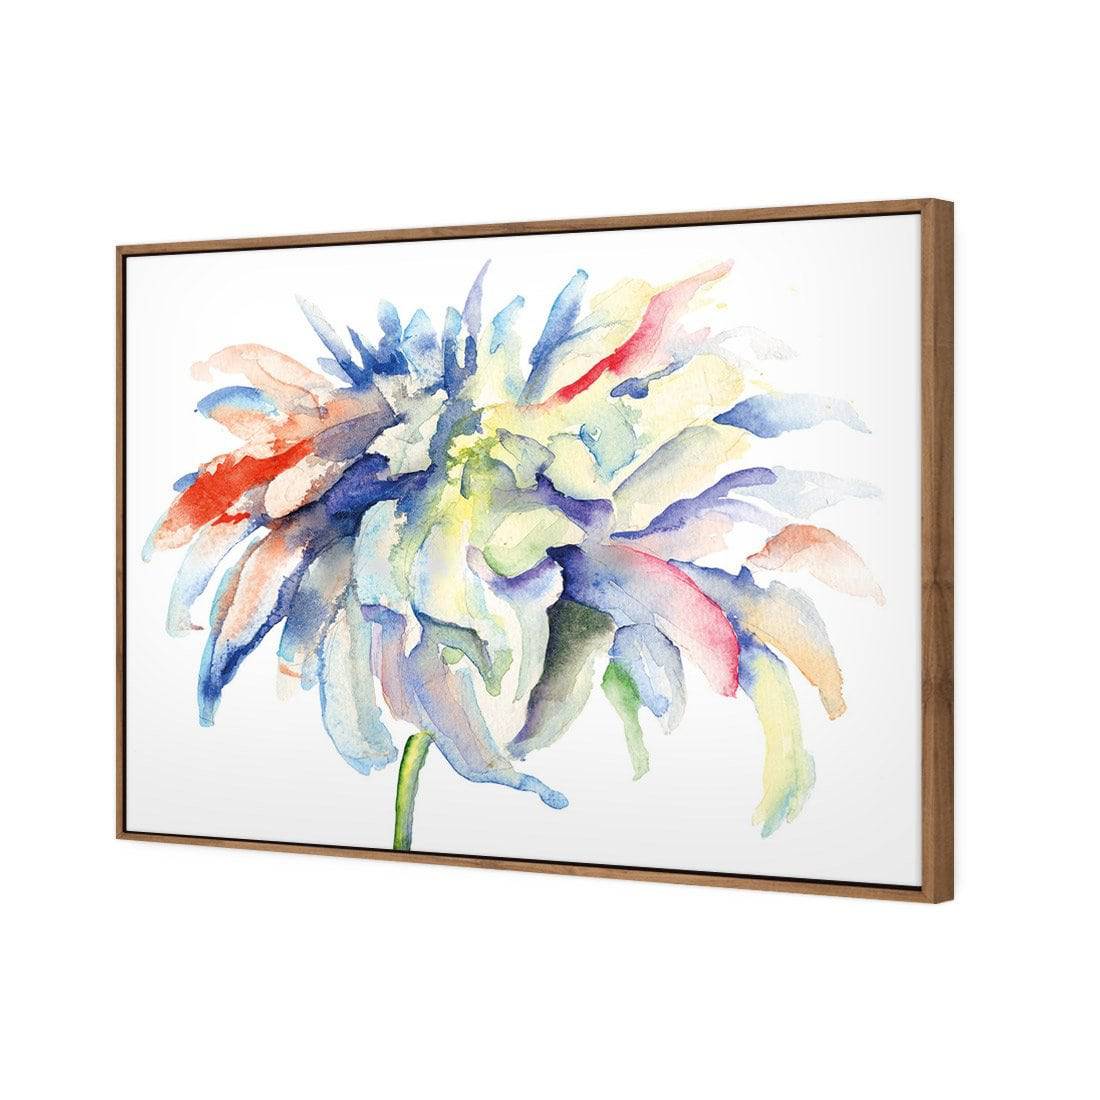 Fairy Floss Canvas Art-Canvas-Wall Art Designs-45x30cm-Canvas - Natural Frame-Wall Art Designs